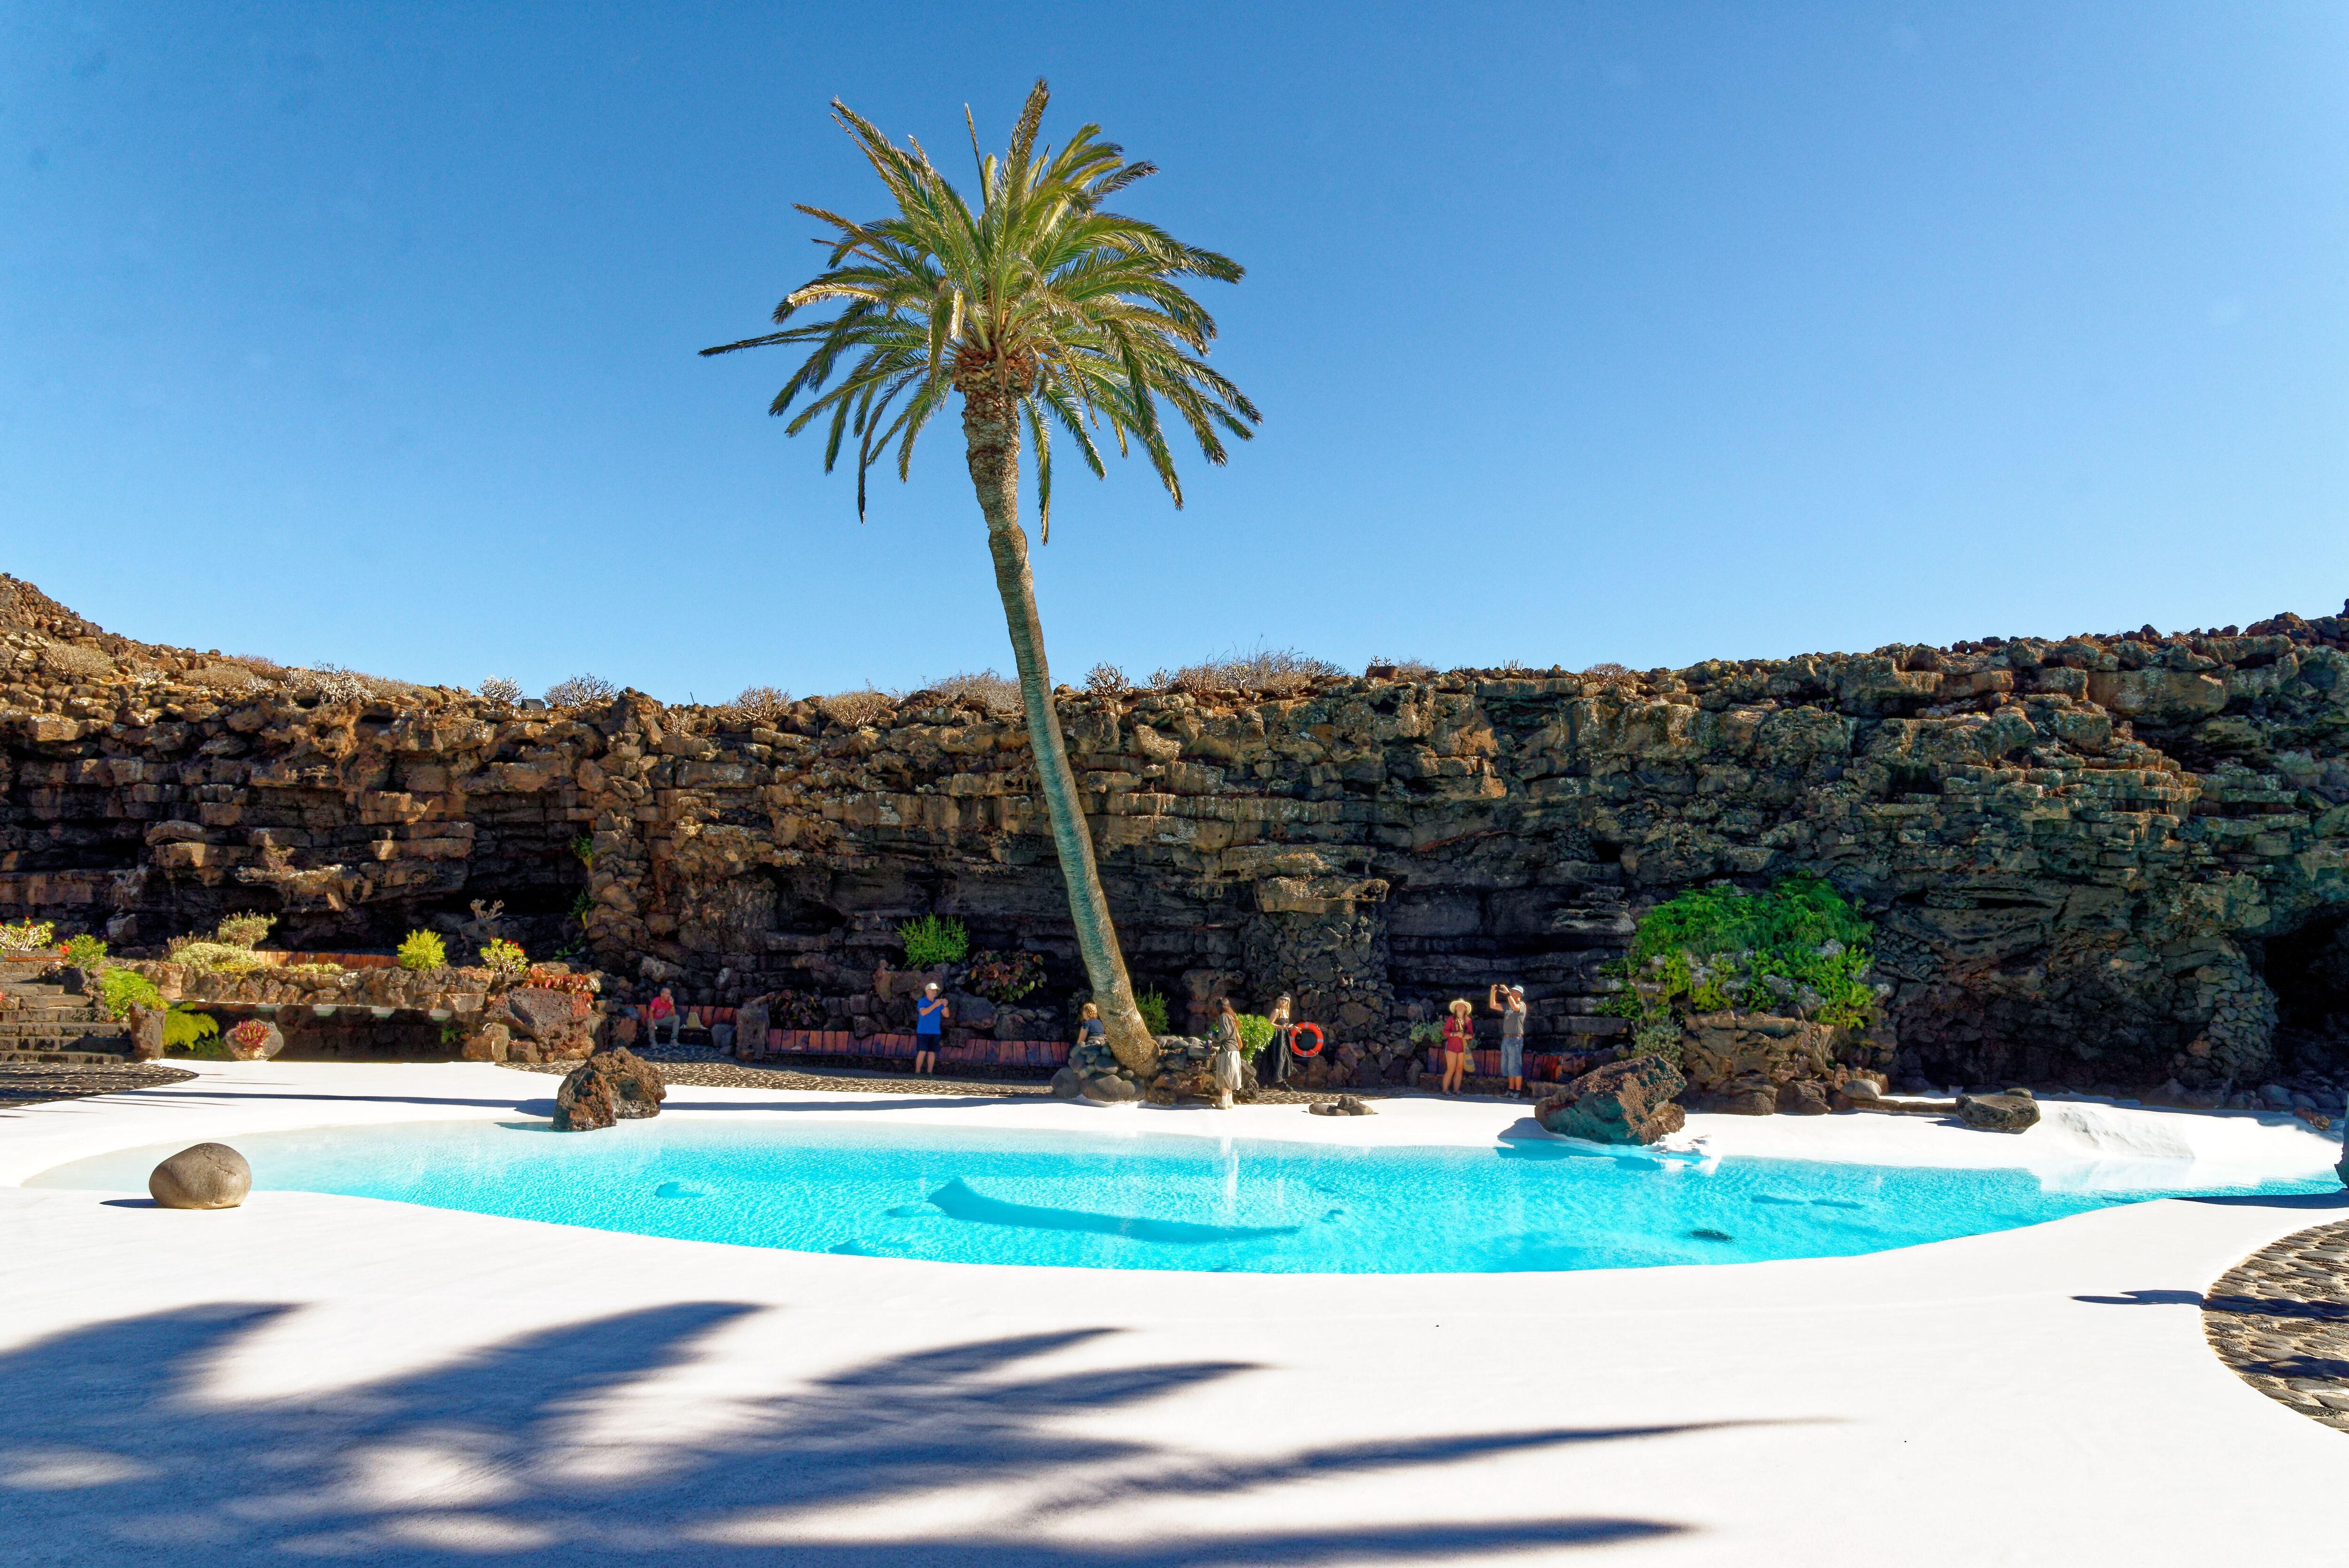 La piscina diseñada por Manrique en los Jameos del Agua, en la isla canaria de Lanzarote.